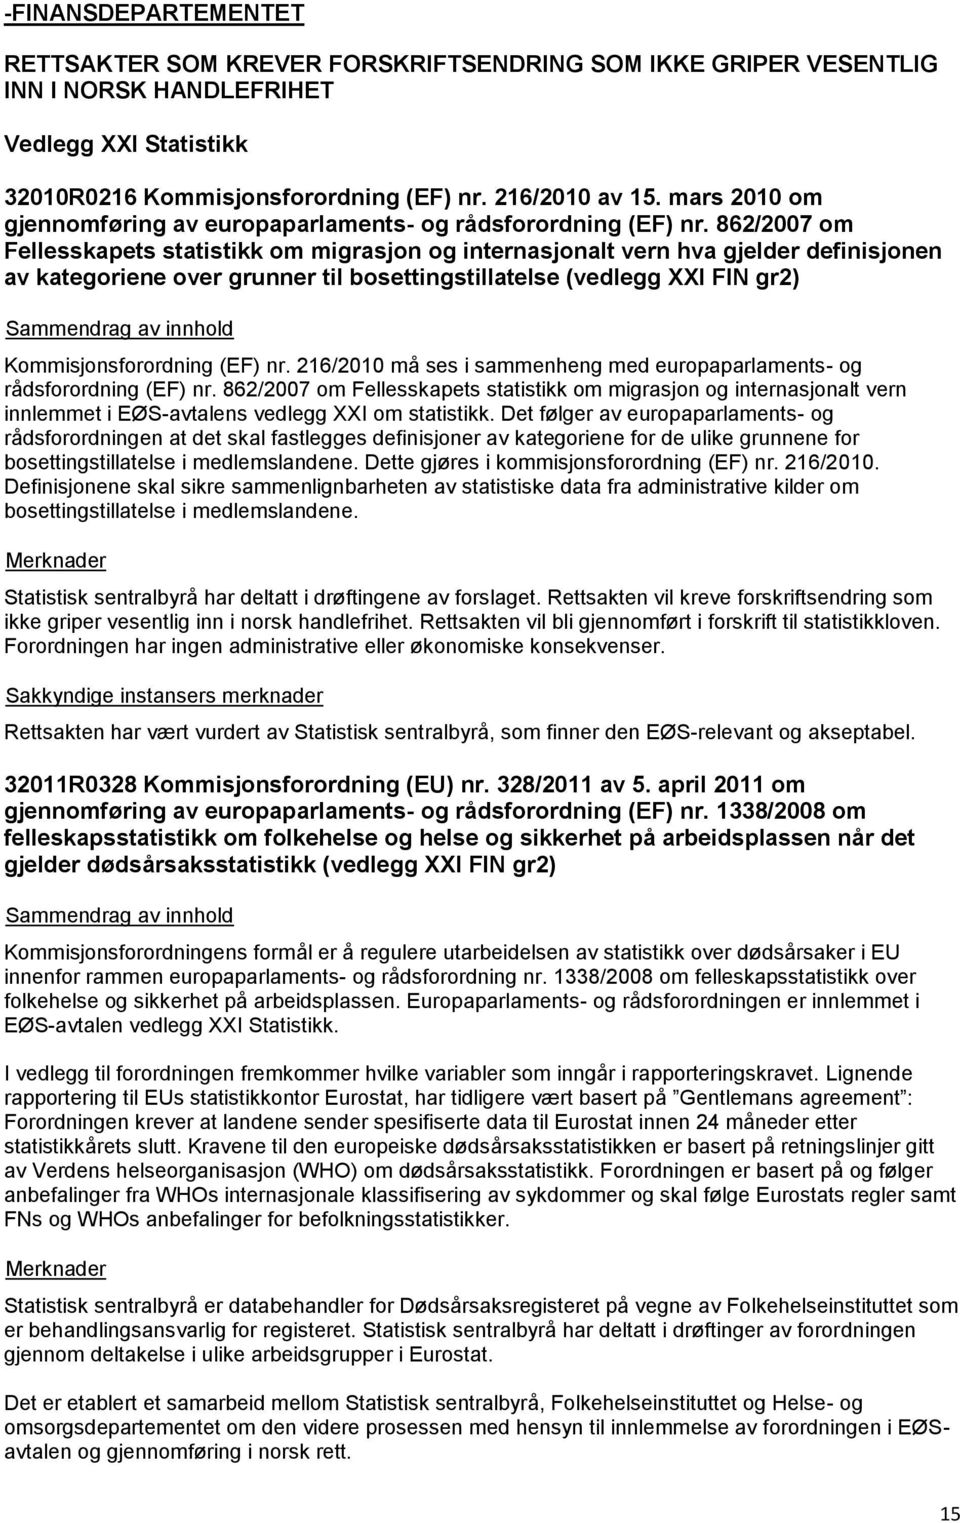 862/2007 om Fellesskapets statistikk om migrasjon og internasjonalt vern hva gjelder definisjonen av kategoriene over grunner til bosettingstillatelse (vedlegg XXI FIN gr2) Kommisjonsforordning (EF)